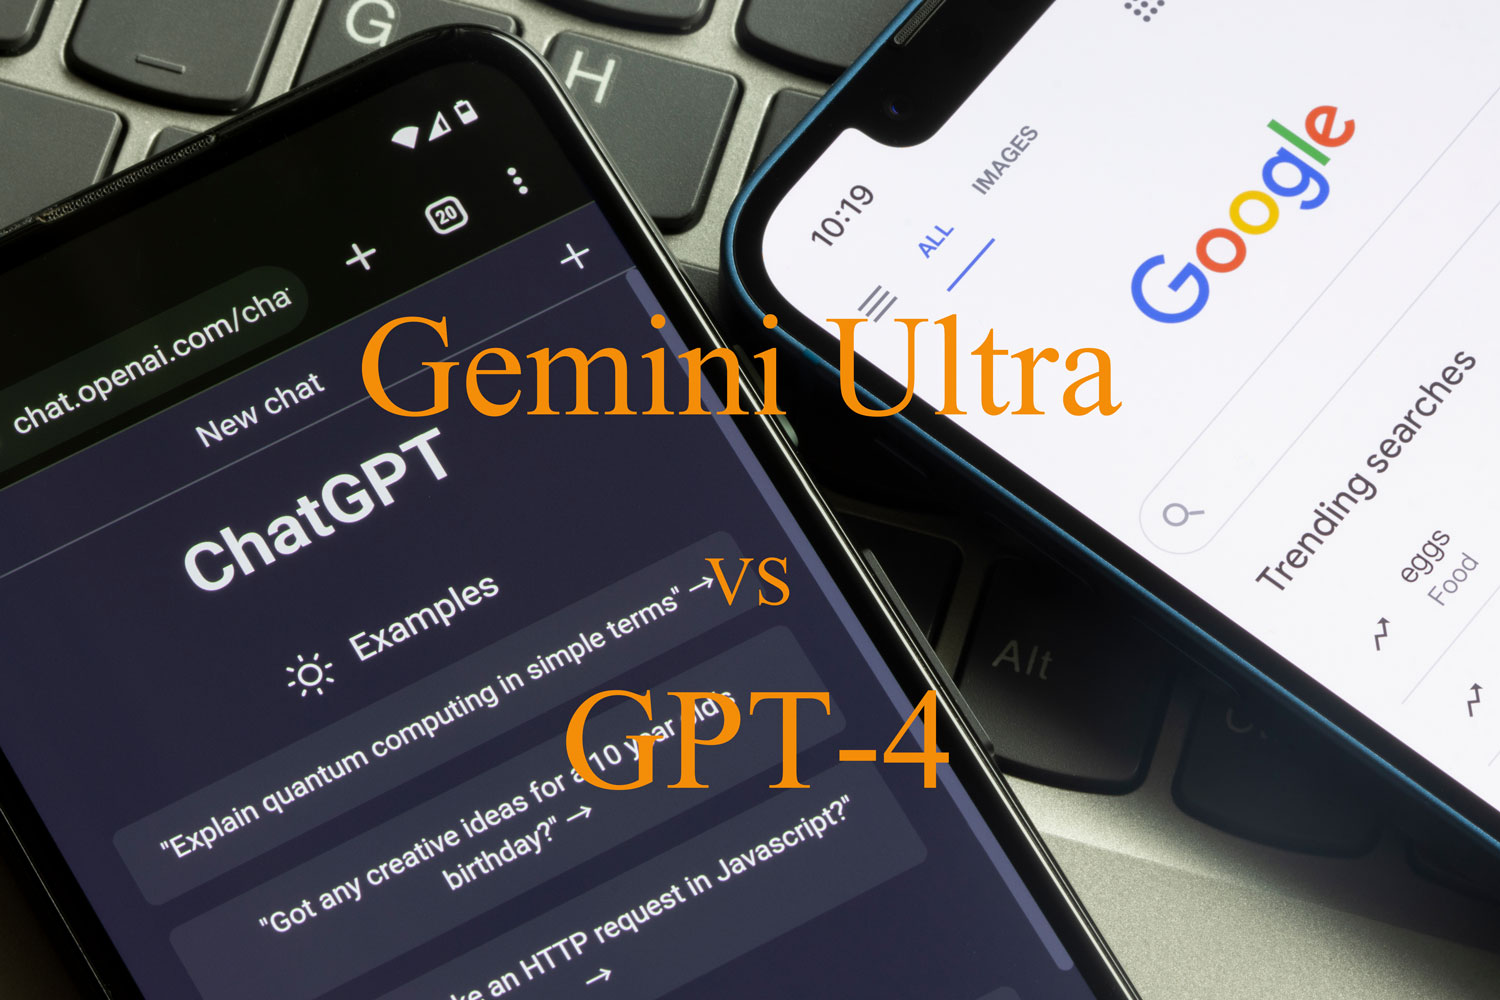 Gemini Ultra 対 ChatGPT4の比較について